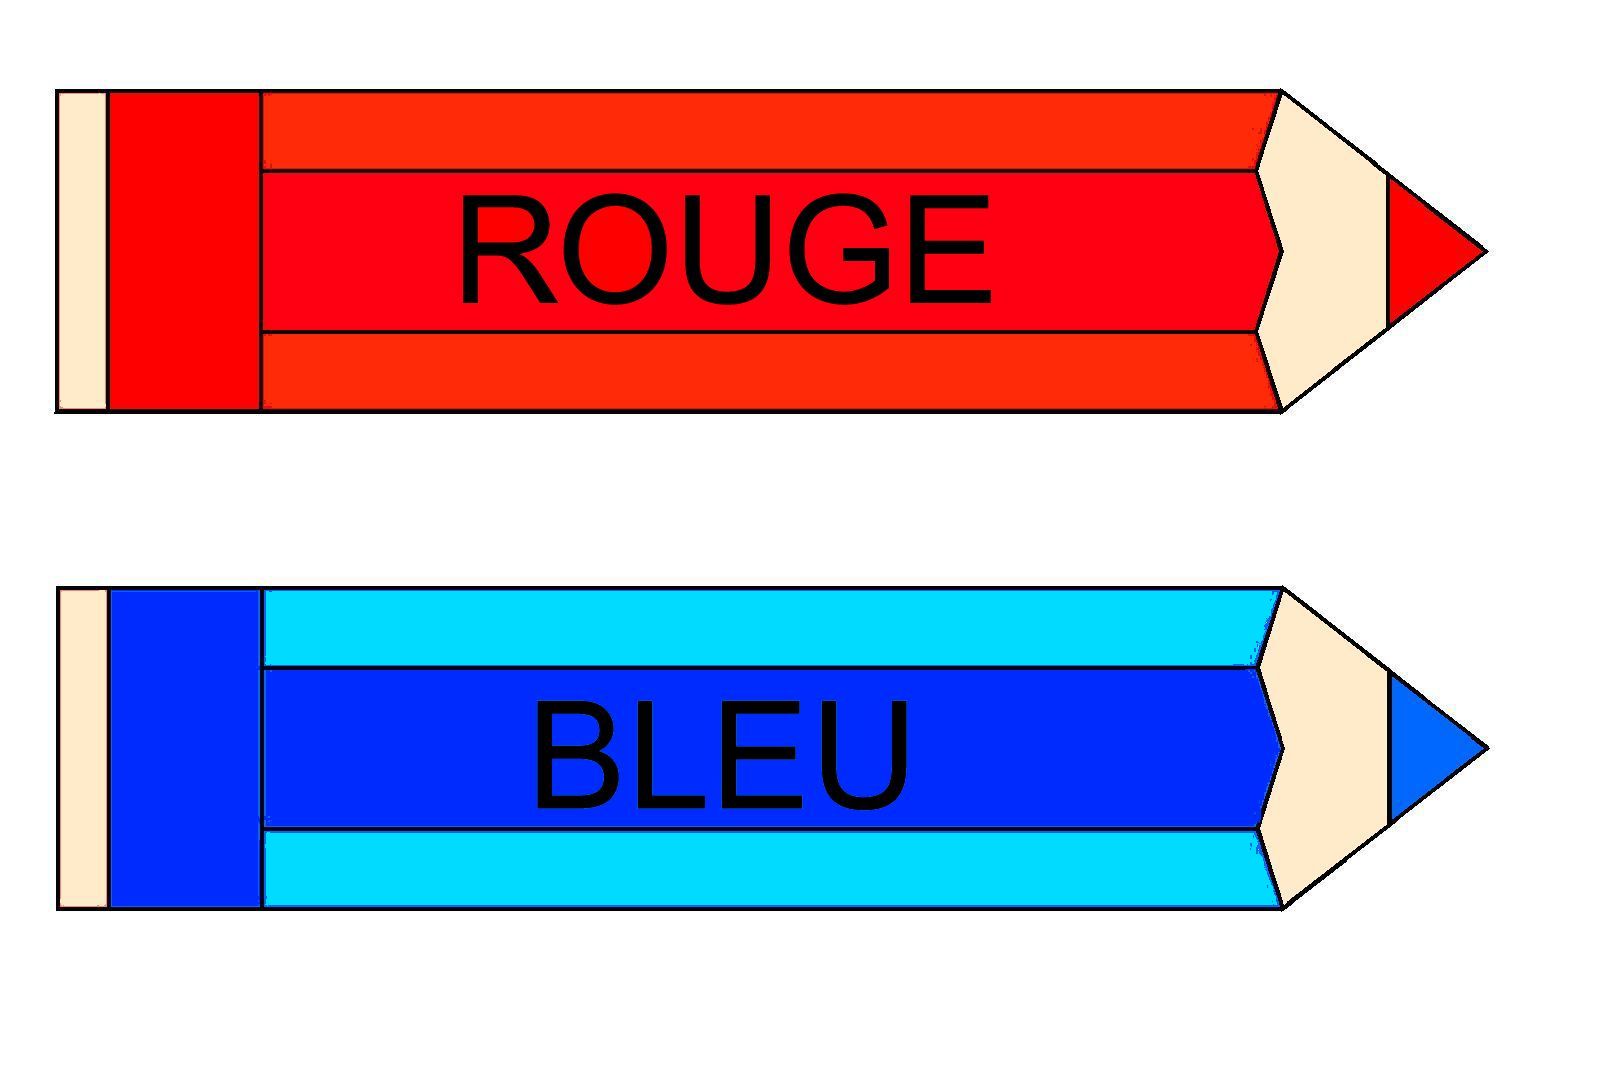 Etiquettes des couleurs en A4 pour affichage dans la classe